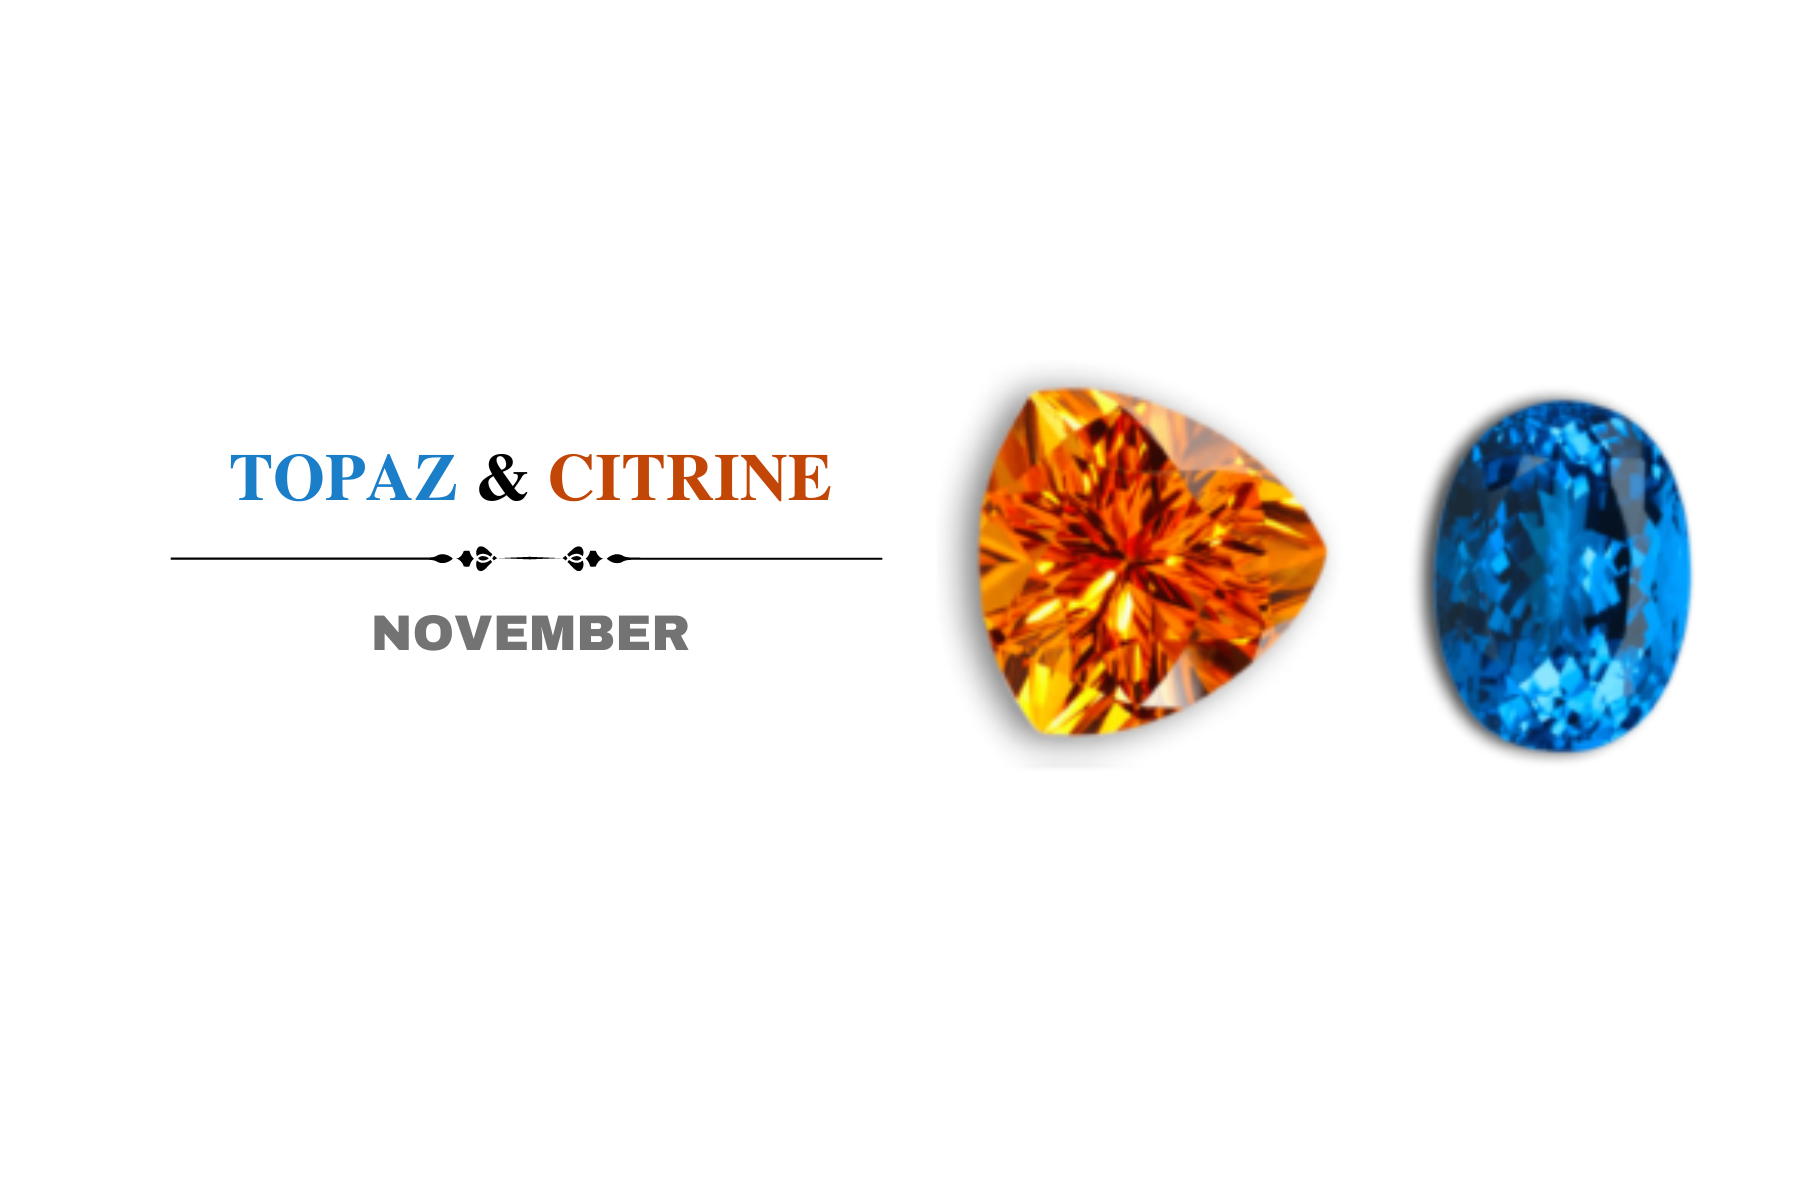 Topaz and Citrine stones